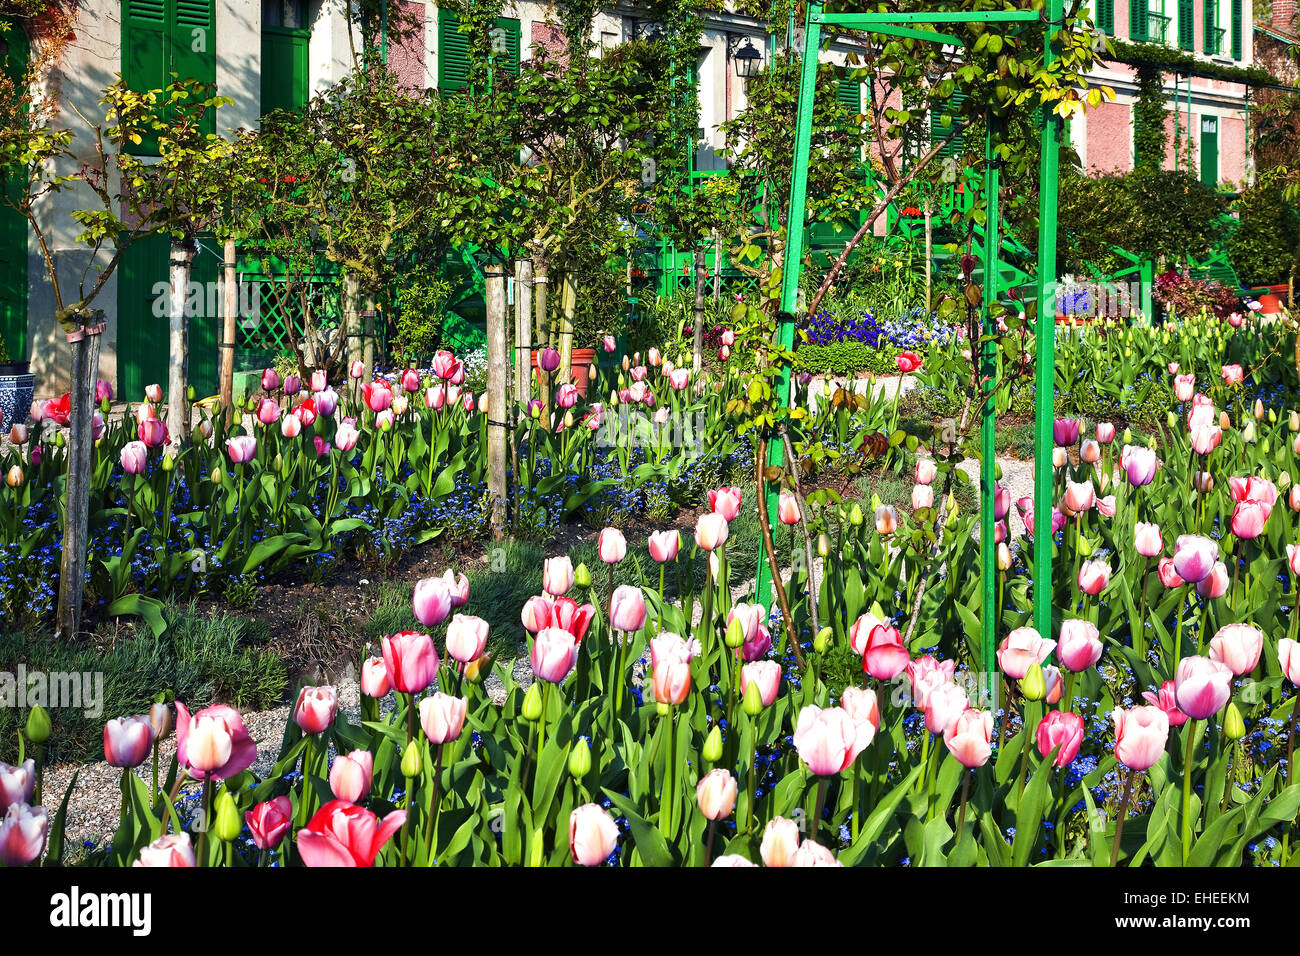 Maison et jardin de Claude Monet, France Banque D'Images